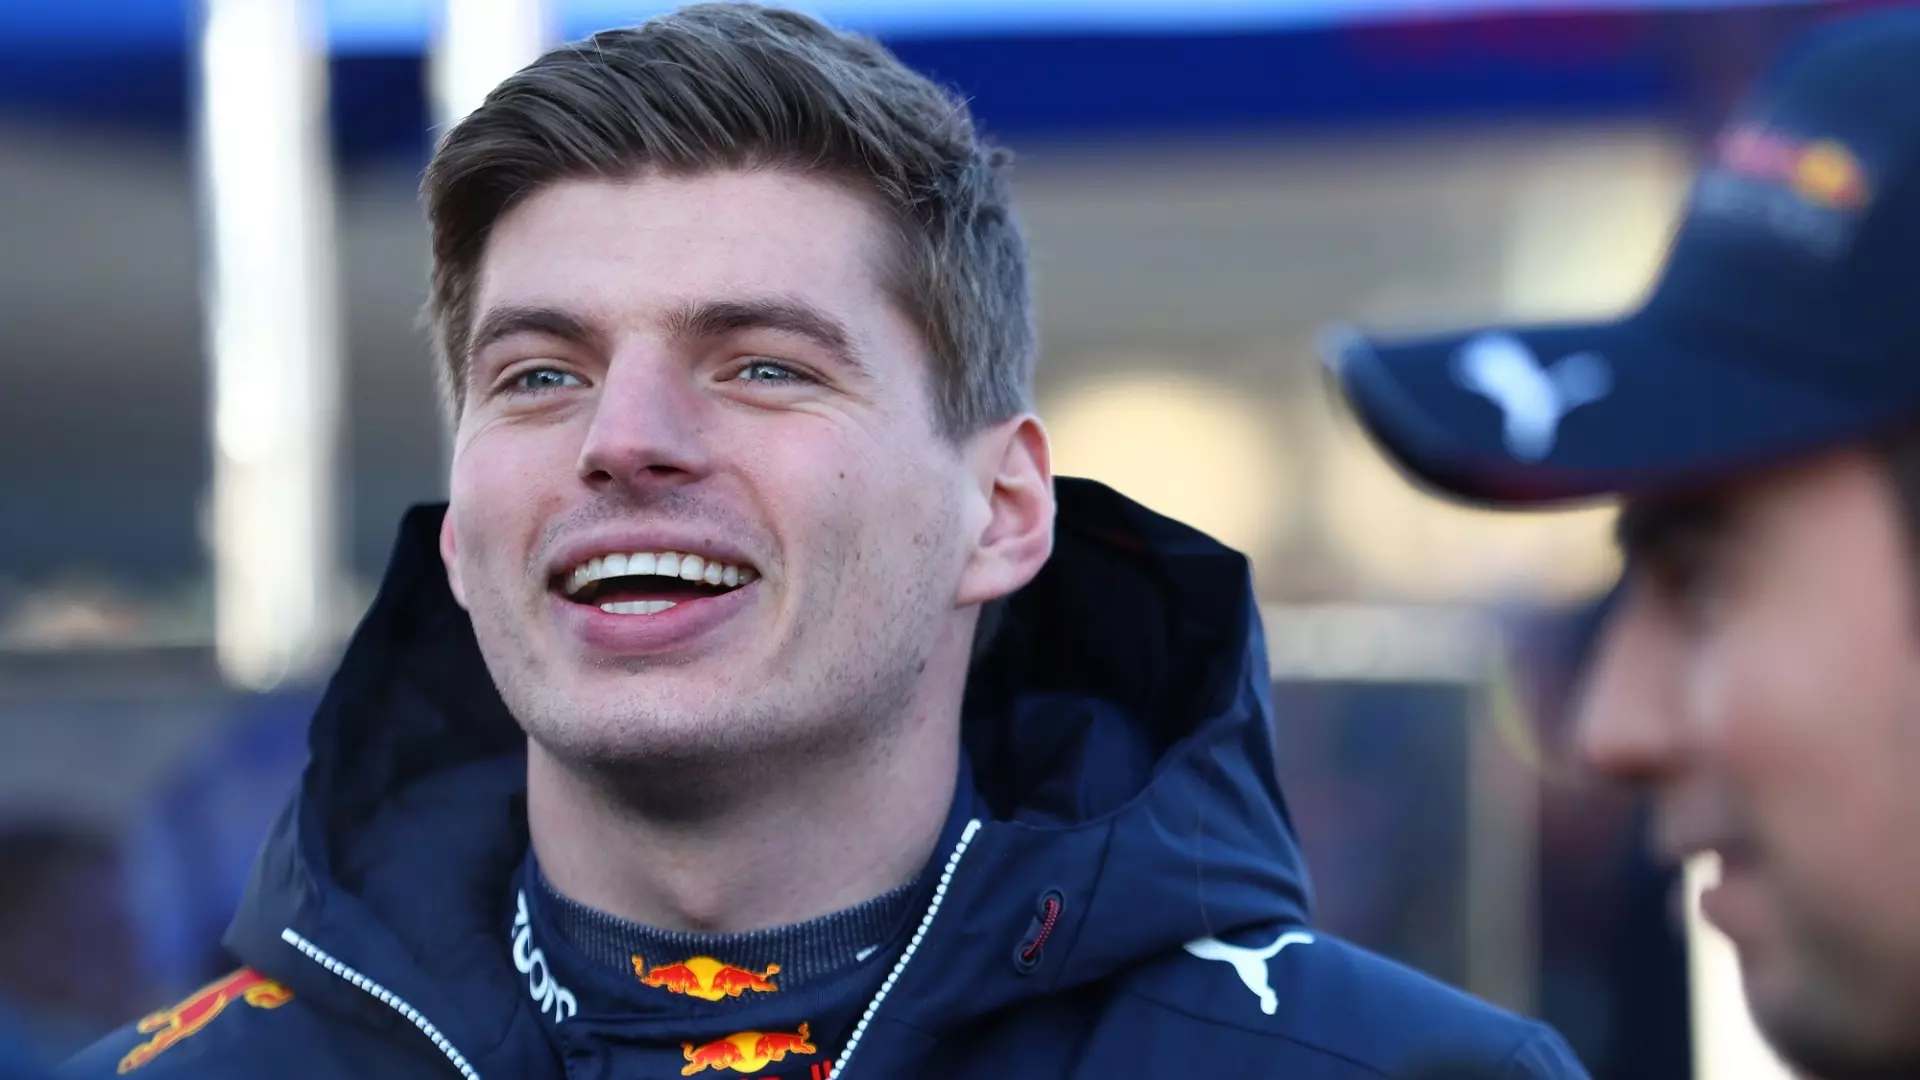 Max Verstappen, niente penalità: resta la pole position in Austria